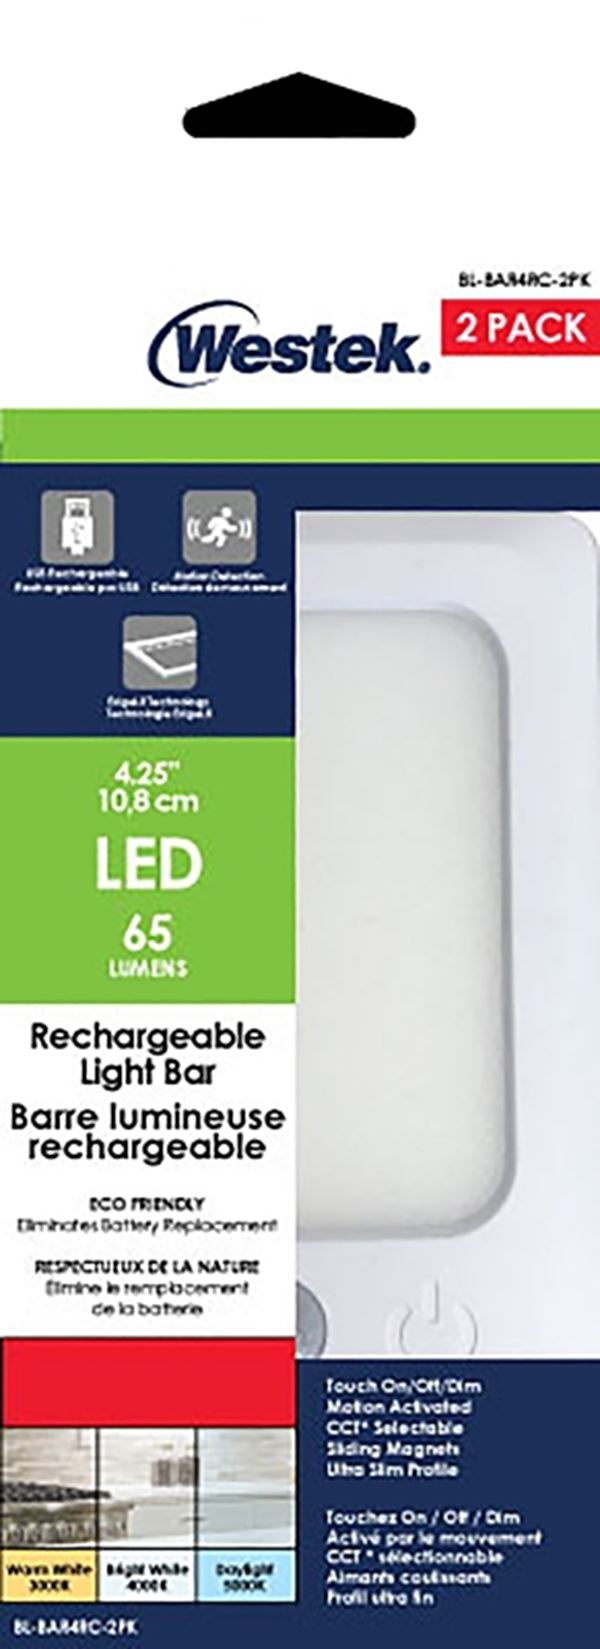 Westek BL-BAR4RC-2PK Rechargeable Bar Light, 5 V, Lithium-Ion Battery, LED Lamp, 60, 65, 60 Lumens, White